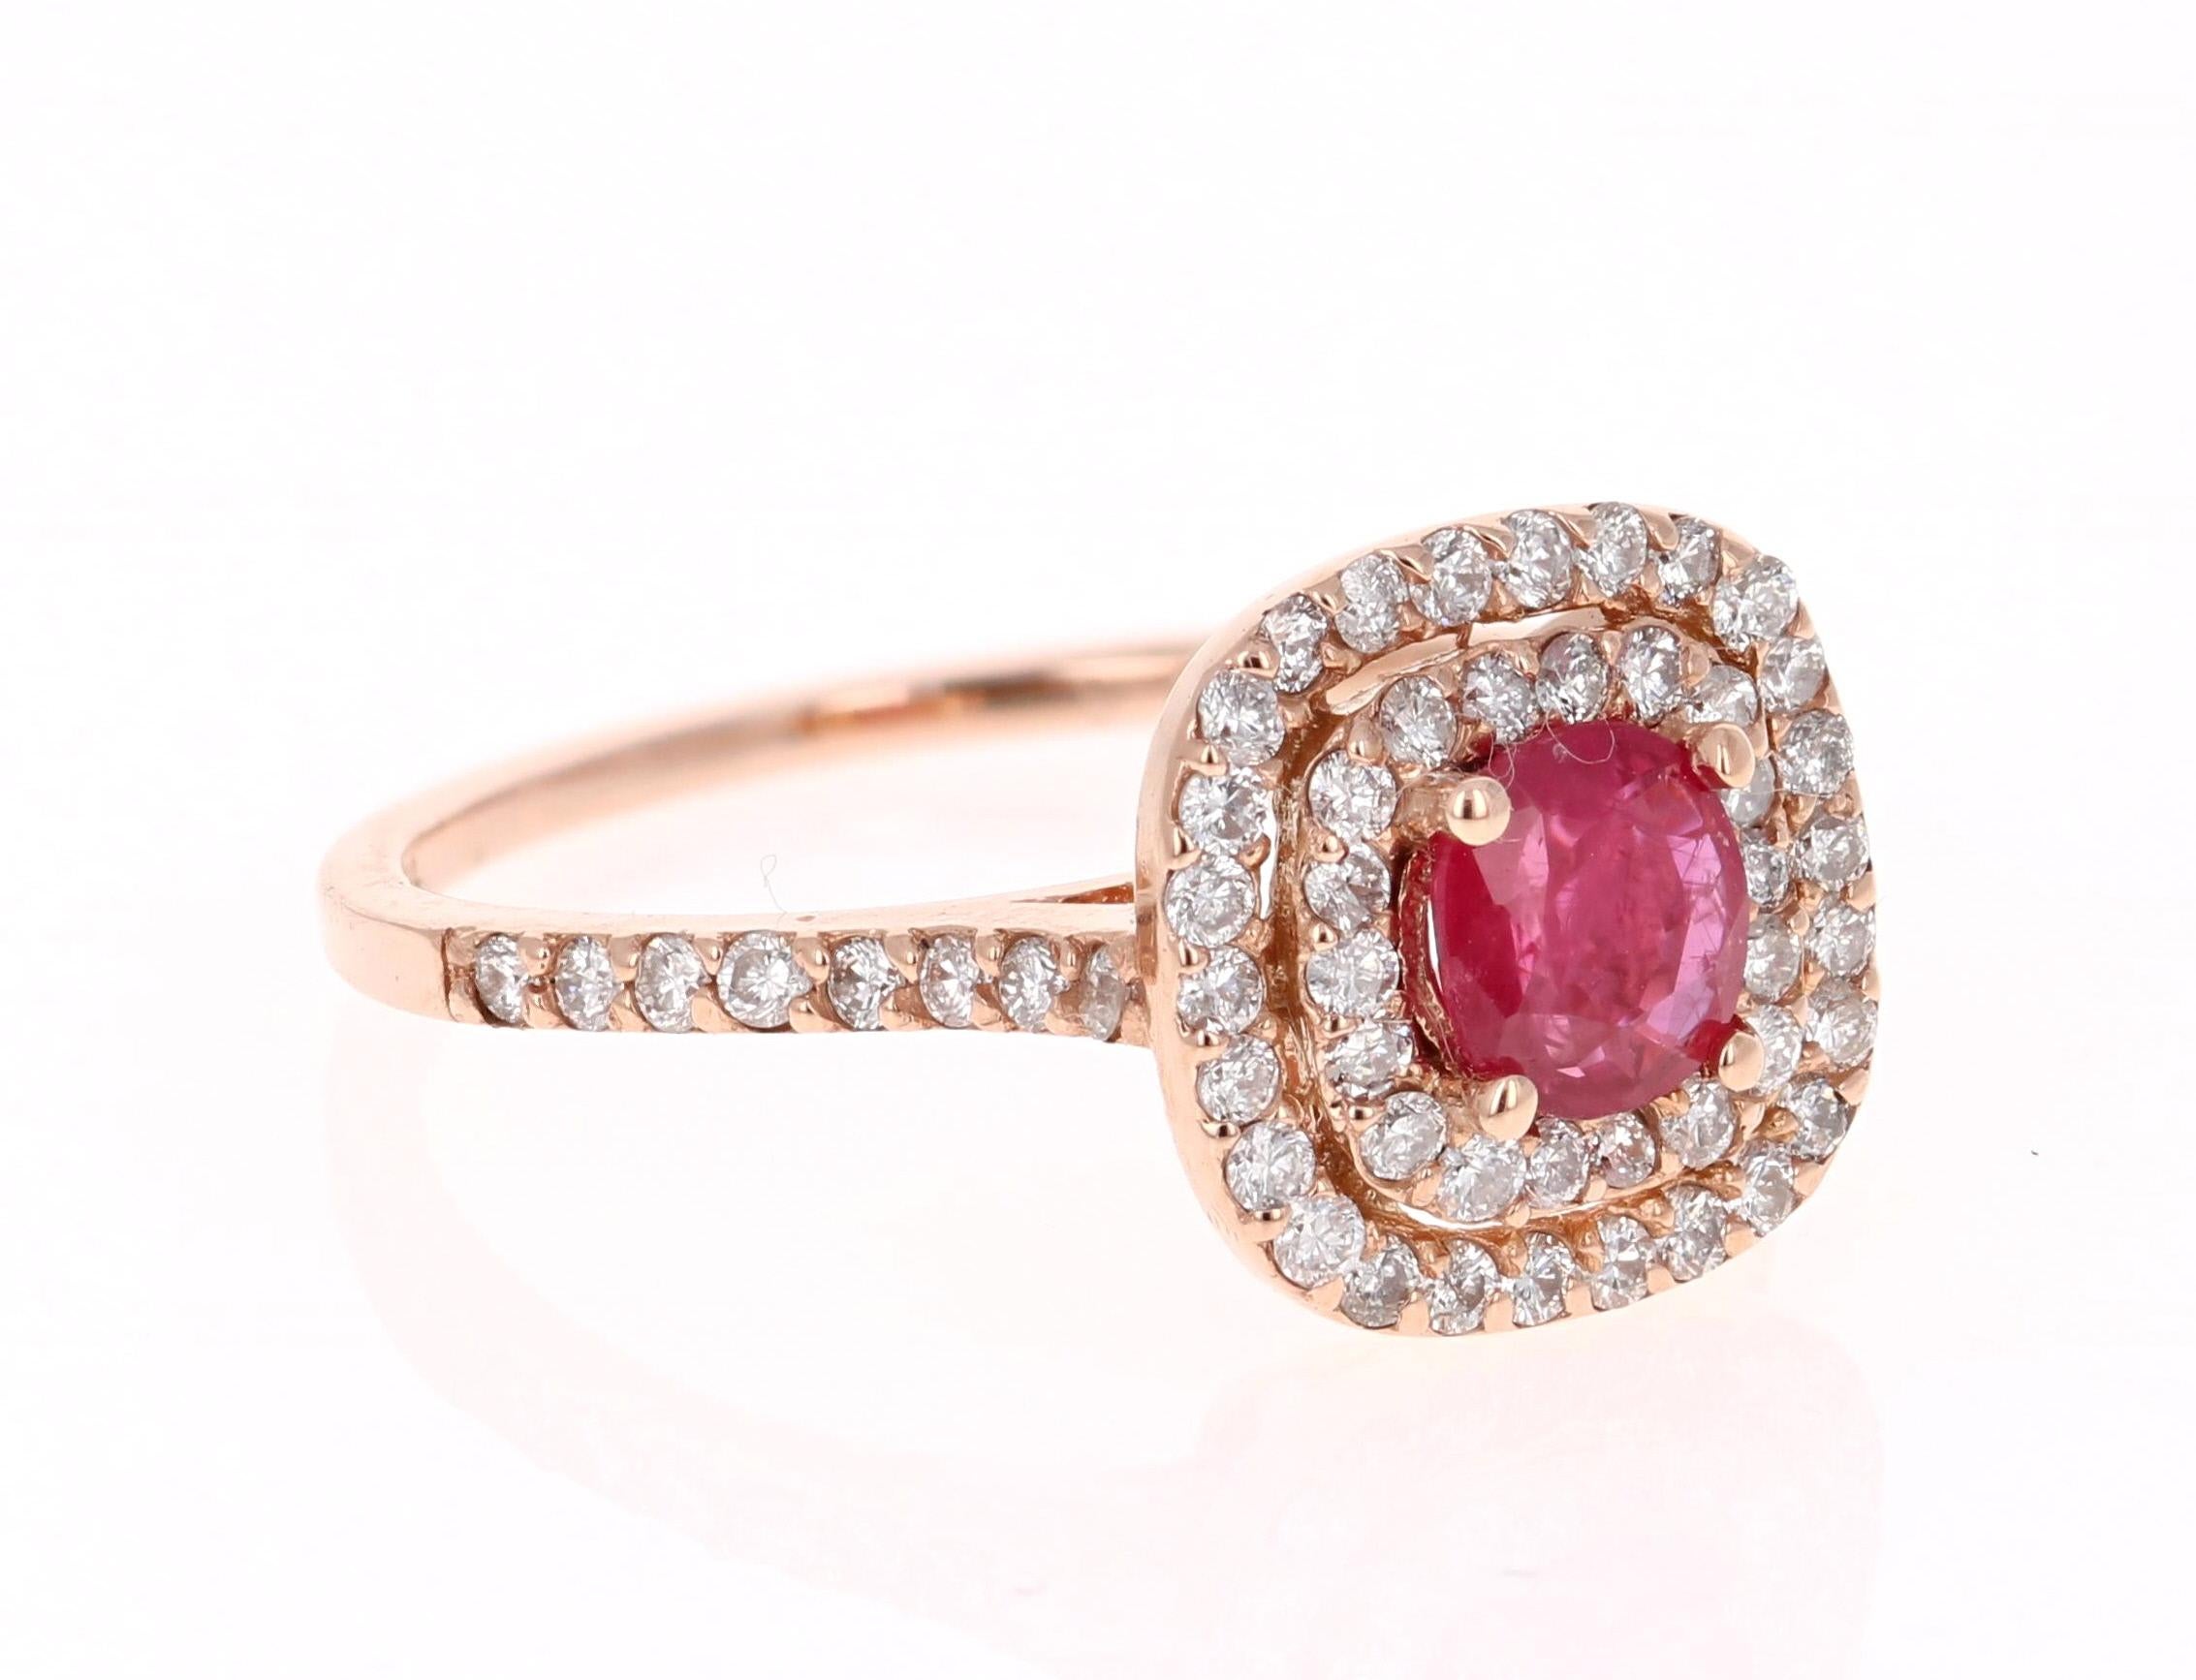 Tout simplement magnifique bague Rubis-Diamant avec un rubis birman de taille ronde de 0,68 carat, entouré d'un double halo de 62 diamants de taille ronde pesant 0,60 carat. Le poids total en carats de la bague est de 1.28 carats. La clarté et la